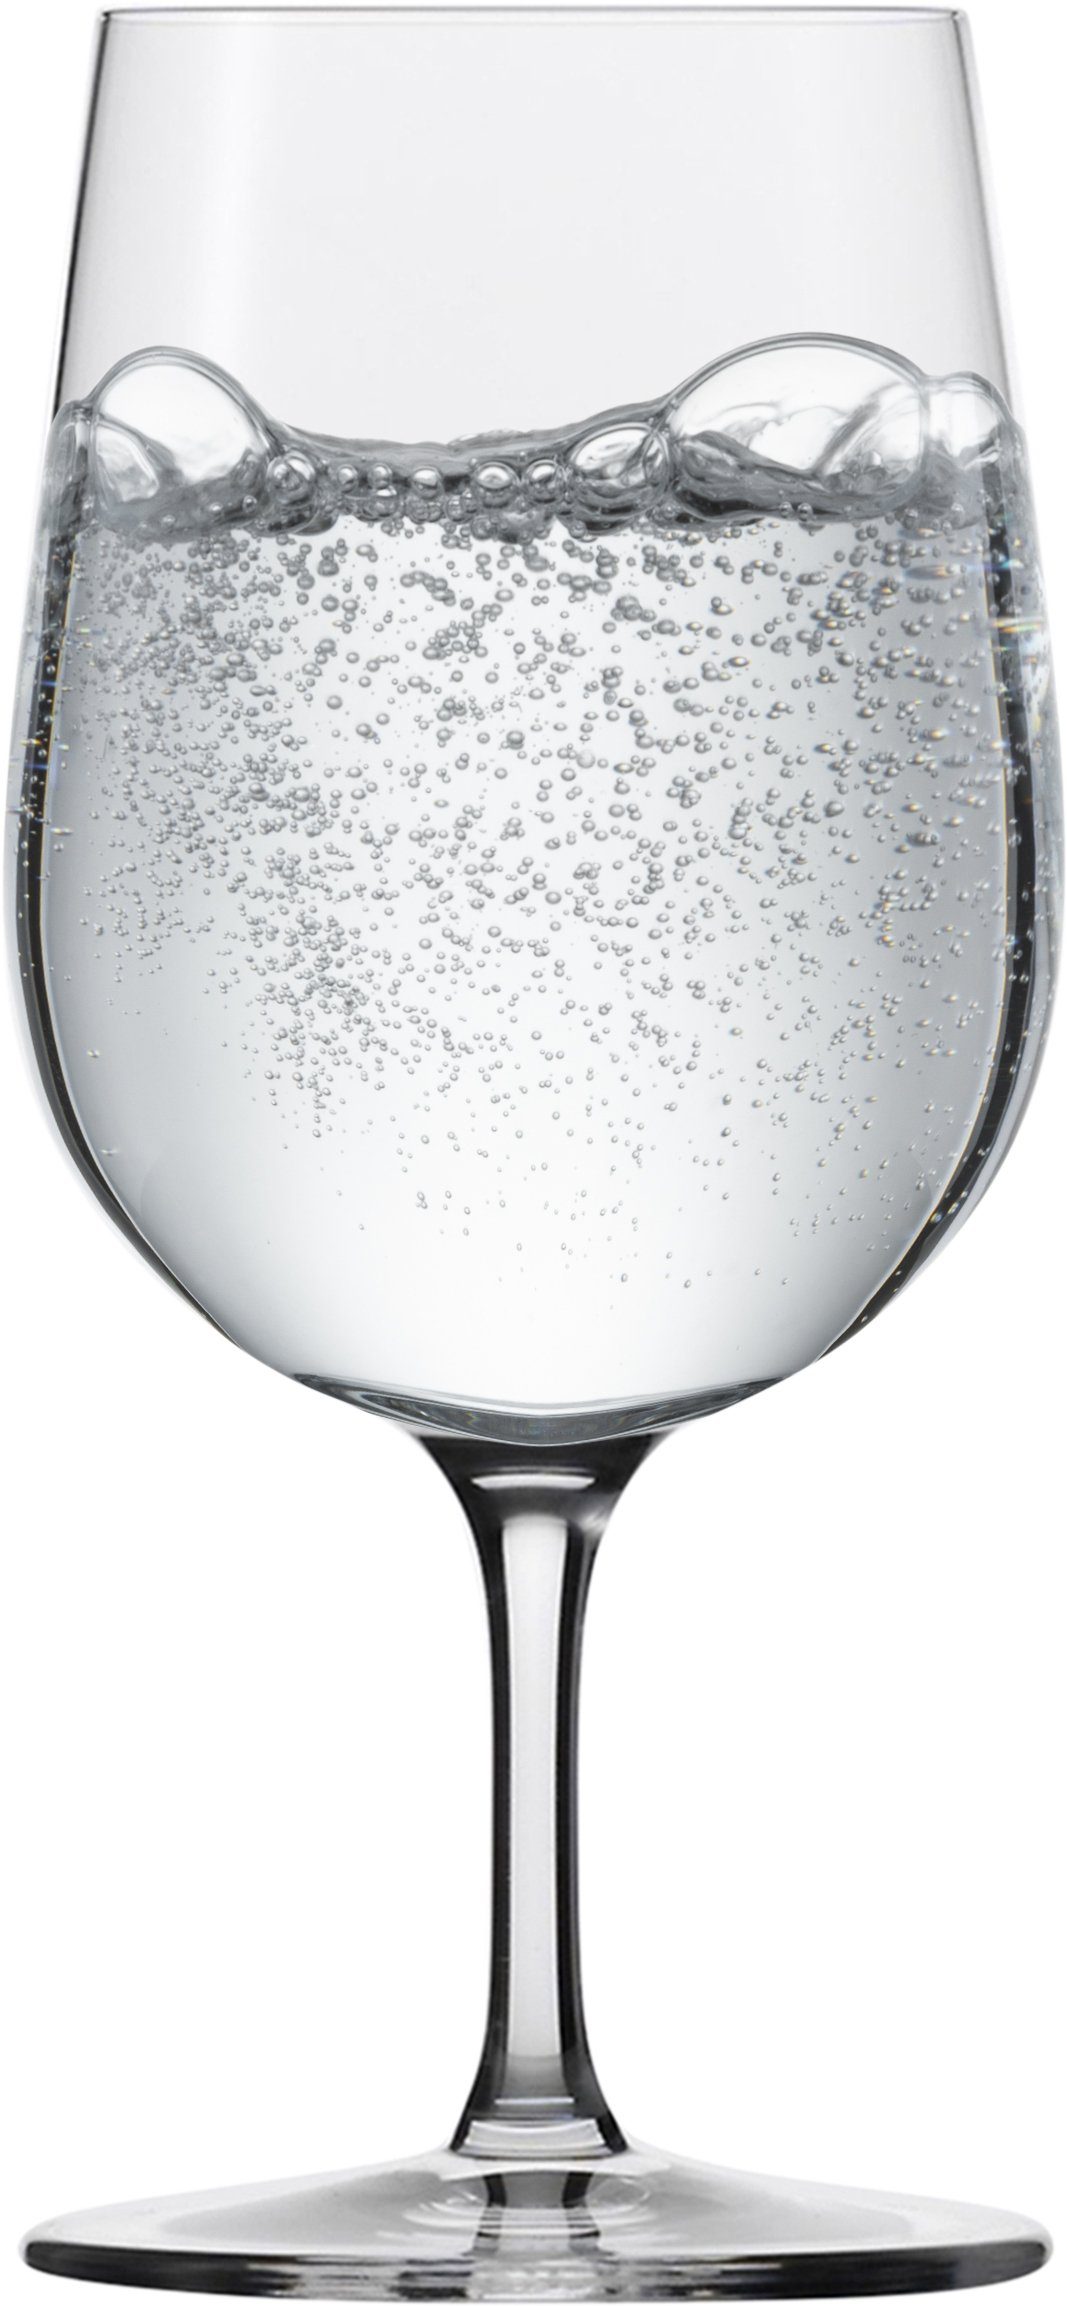 Eisch Gläser-Set Superior SensisPlus, Kristallglas, bleifrei, 340 ml, 4- teilig